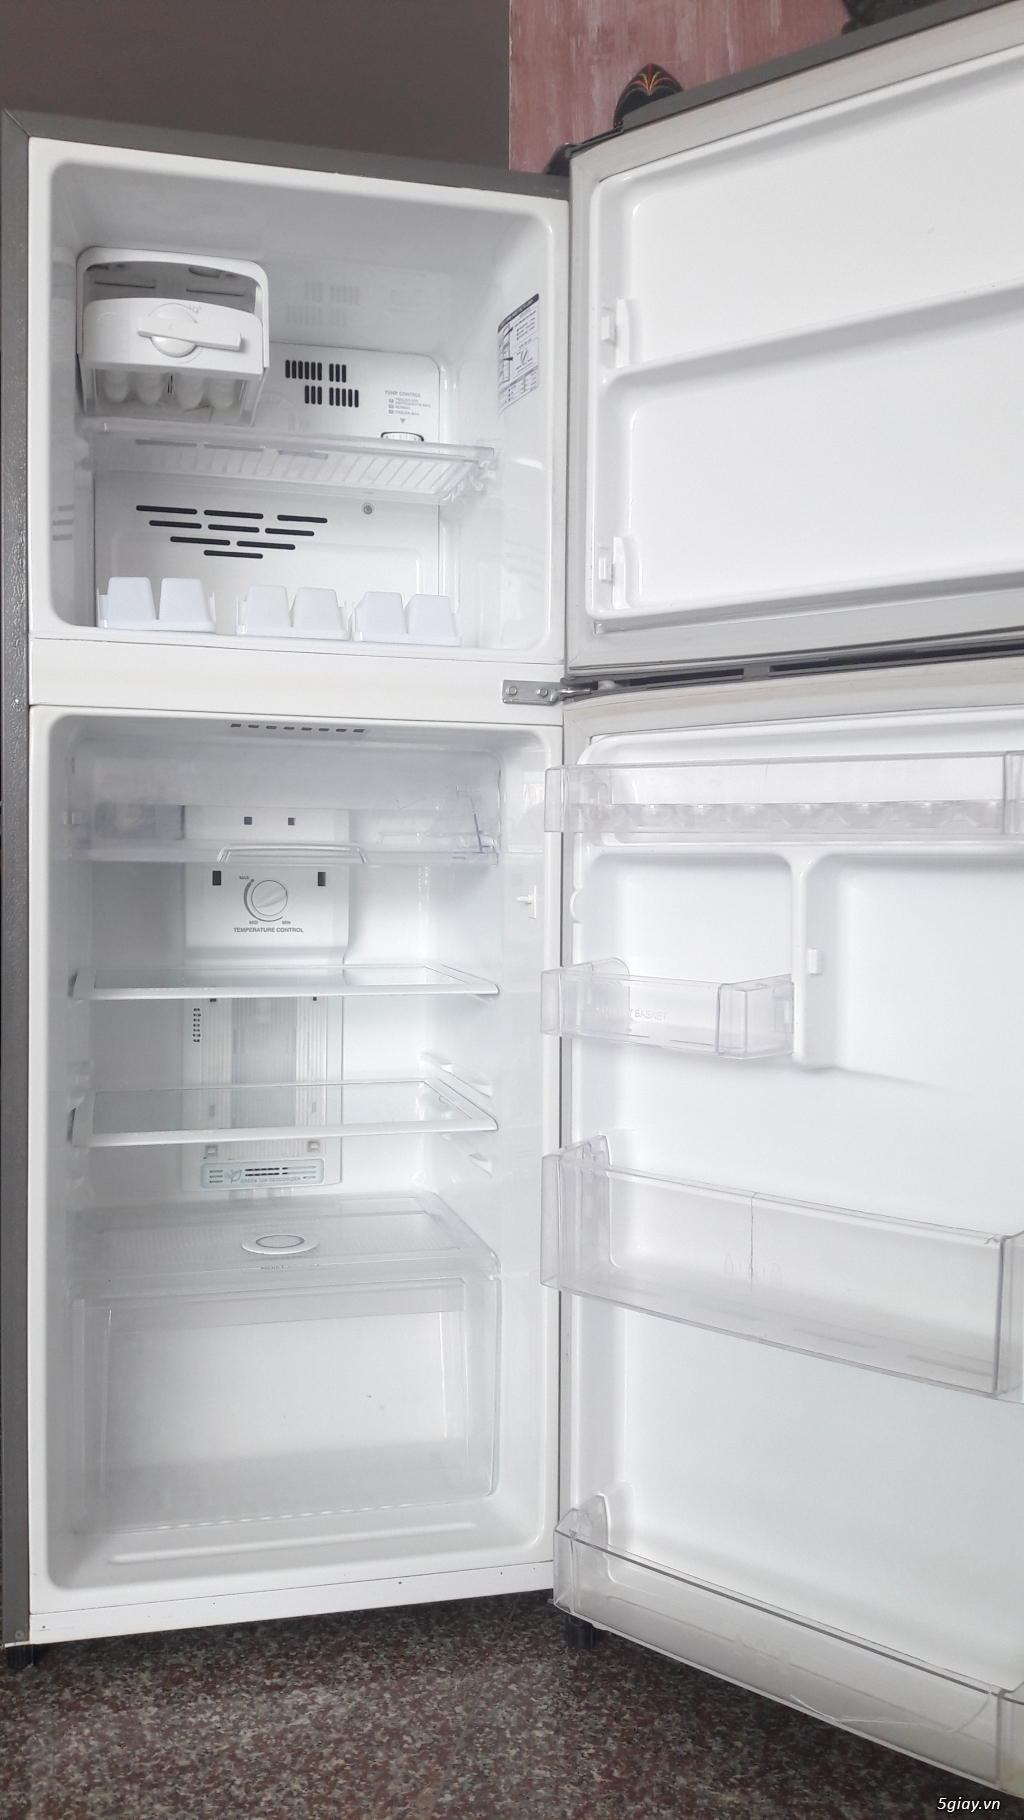 Tủ lạnh LG-185 lít- 2 cửa, 6 ngăn- còn mới 85% - 1